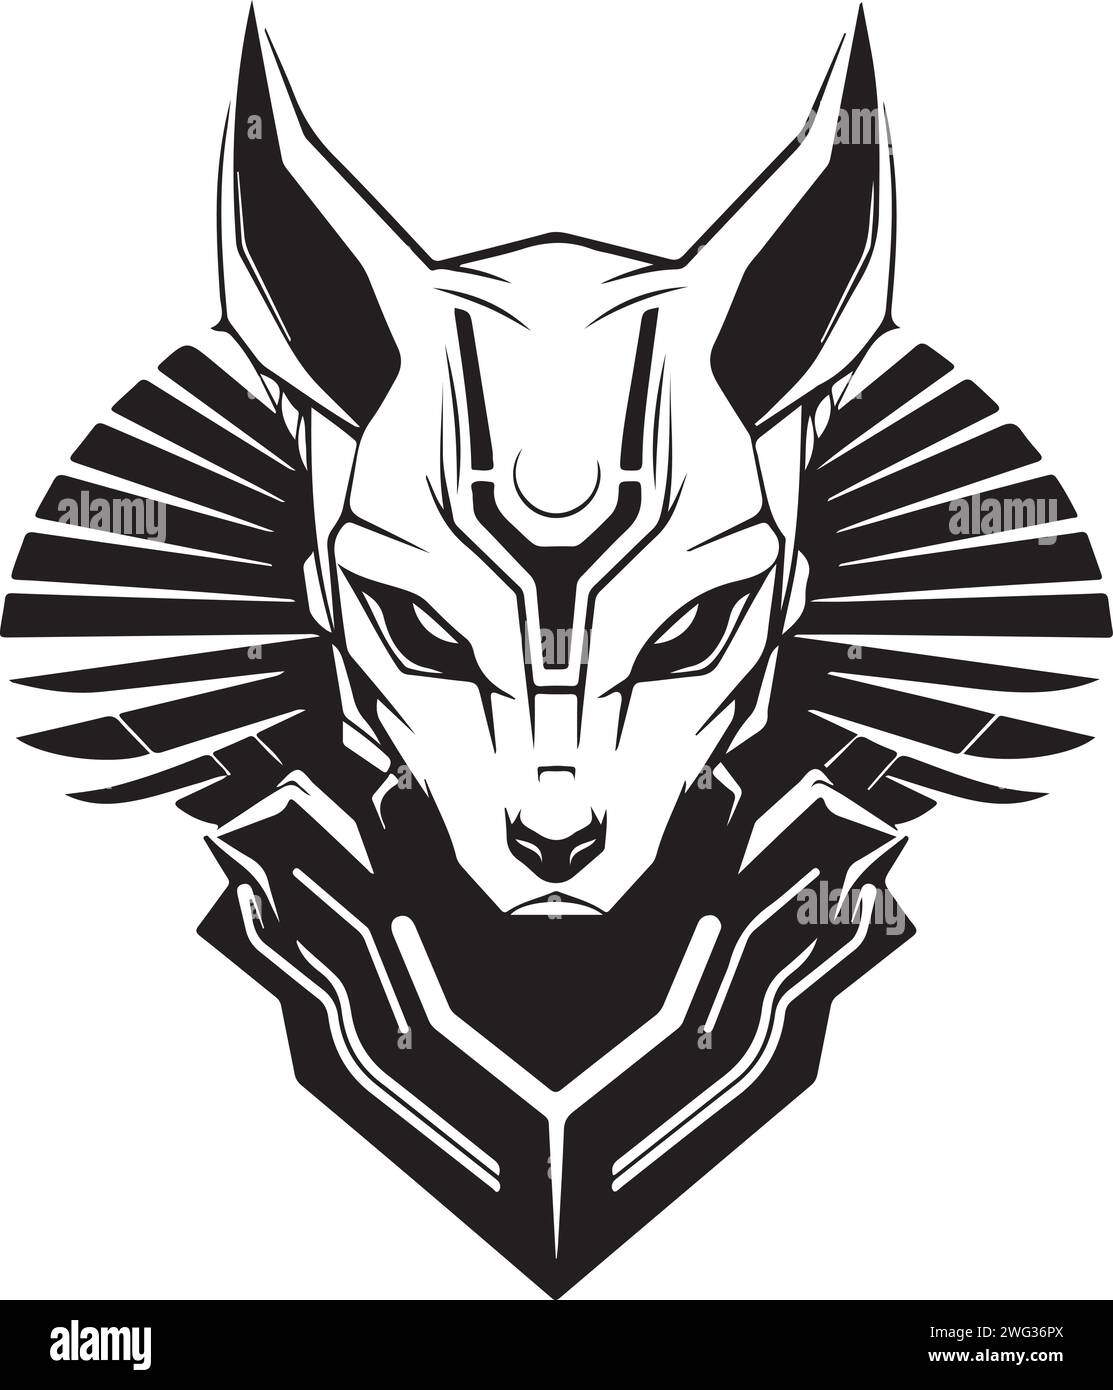 Modèle de logo strict moderne de chat abstrait ou de tête de sphinx. Illustration vectorielle de chat ou sphinx pour impression, affiche ou logo. Illustration de Vecteur